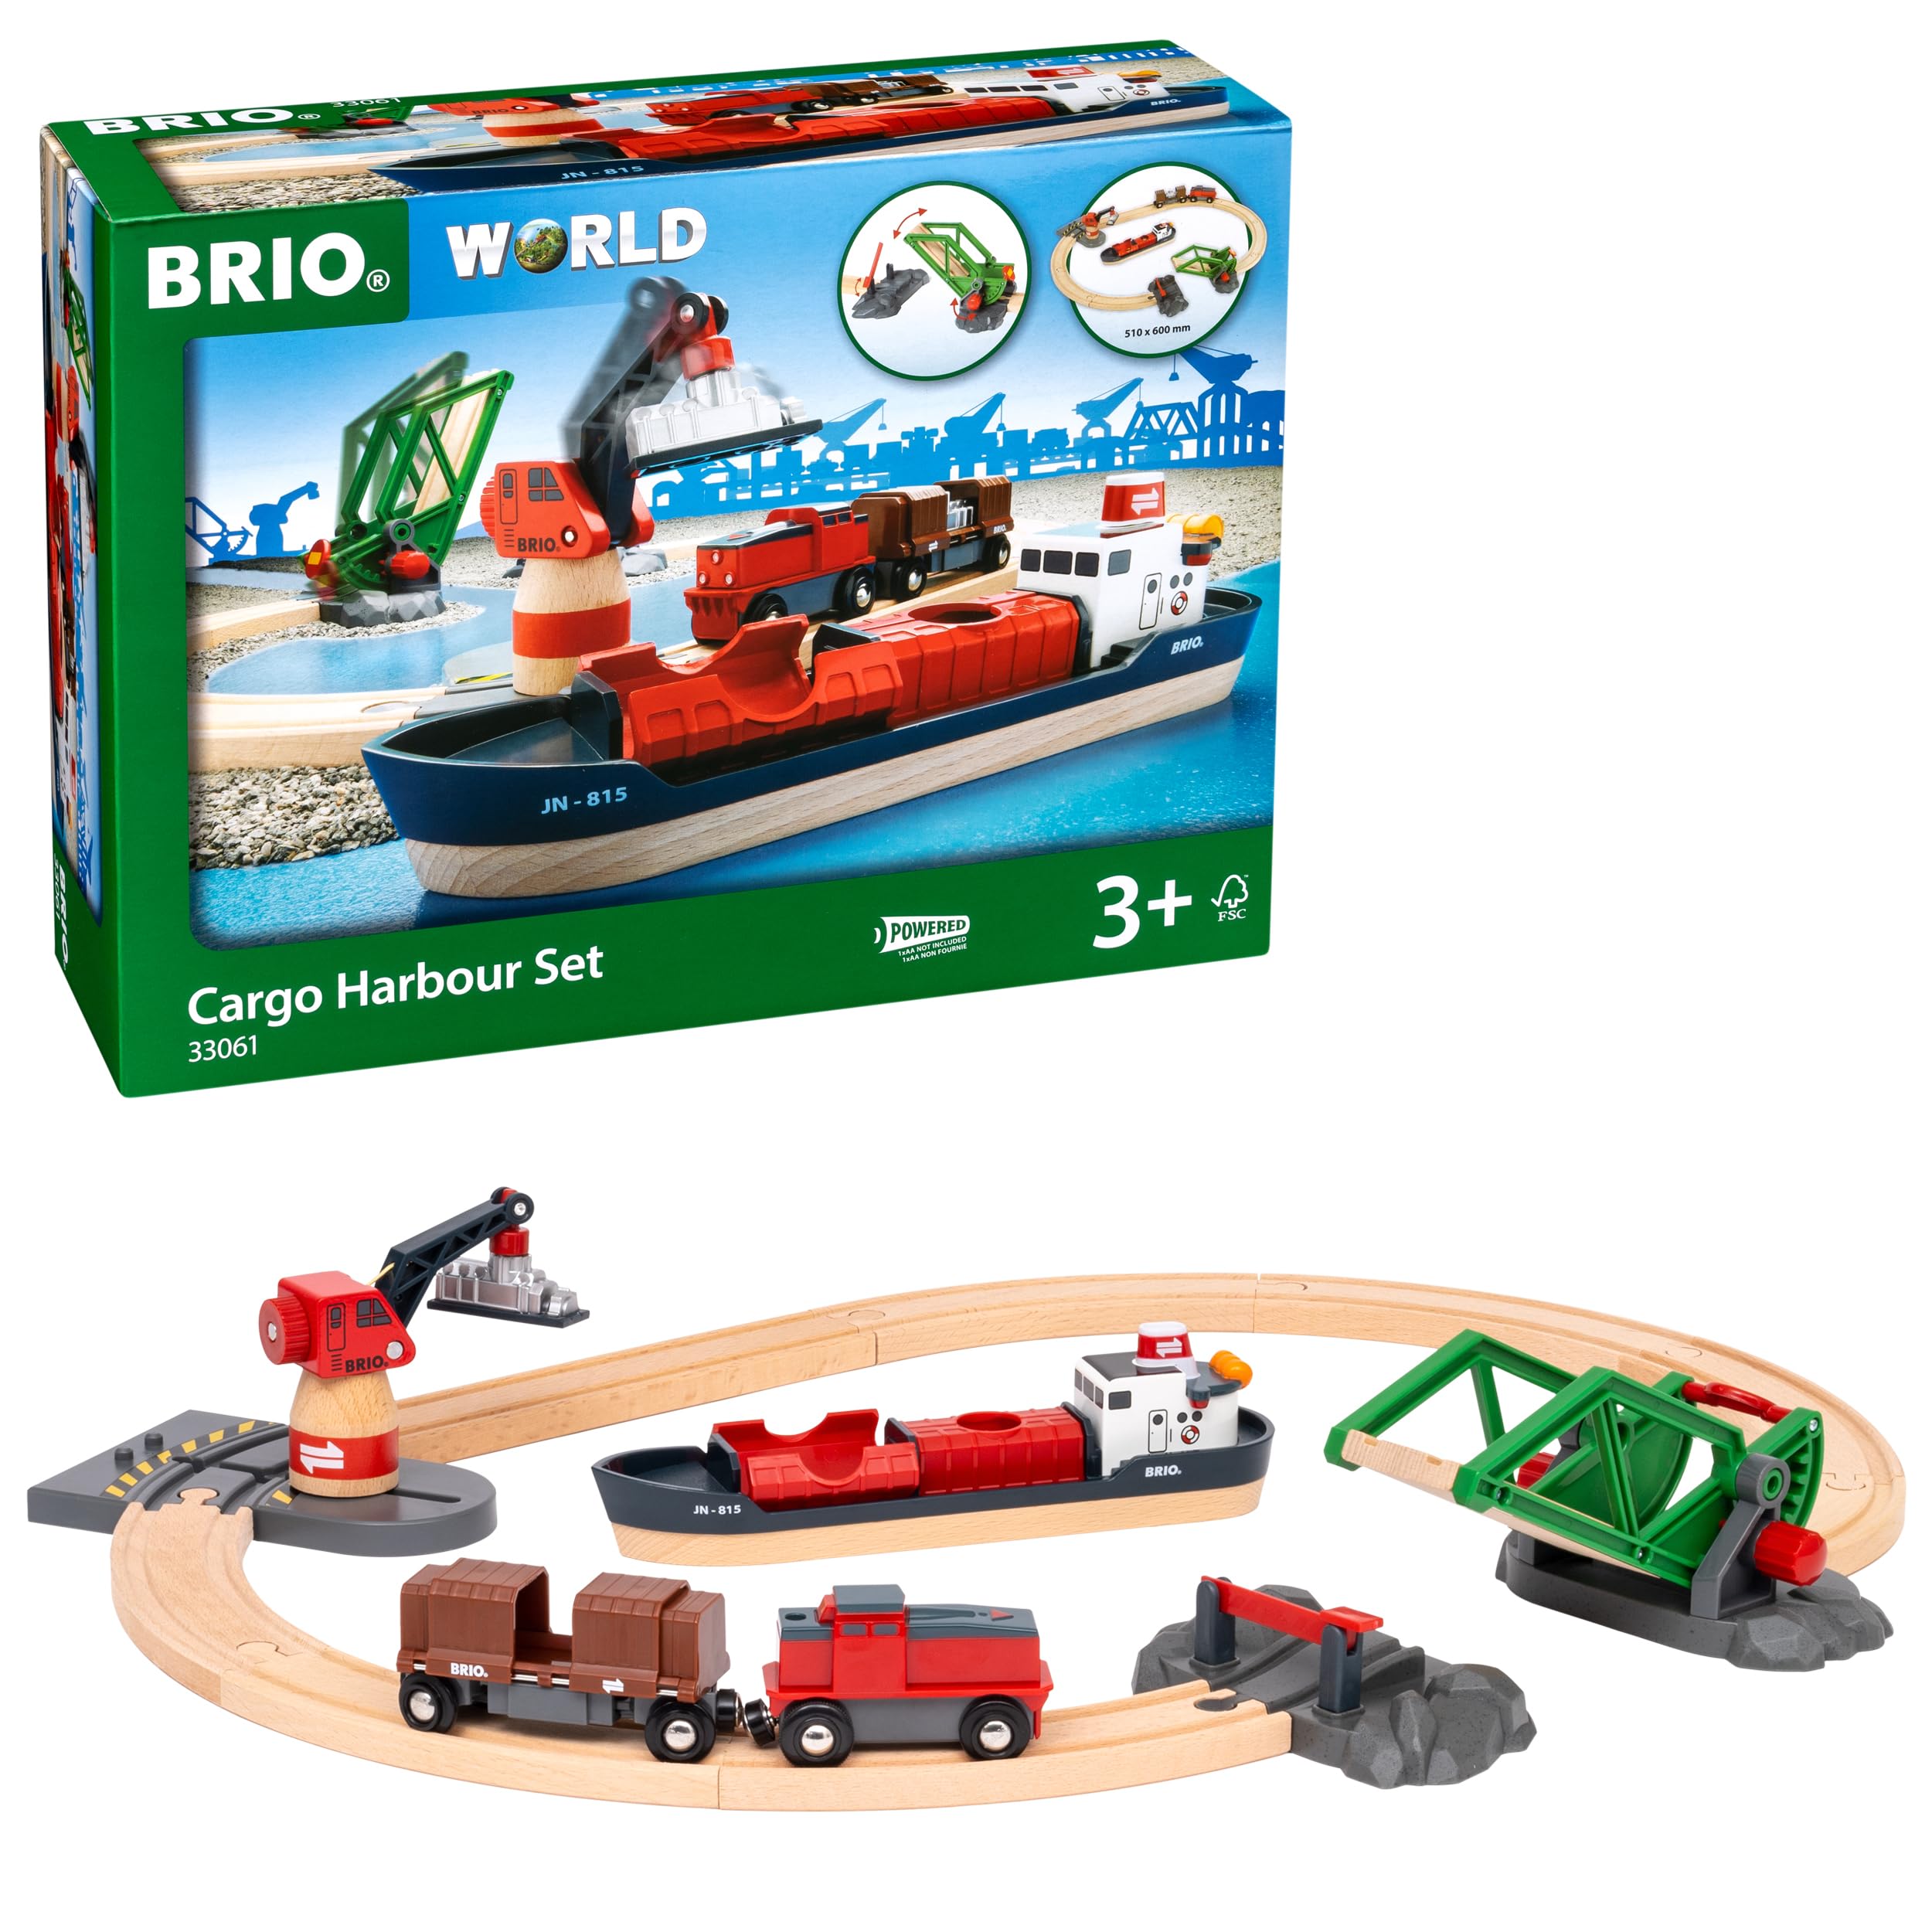 BRIO World 33061 Container Hafen Set - Mit Hafenbrücke und beweglichem Kran zum Beladen des Frachtschiffes - Geeignet für Kinder ab 3 Jahren